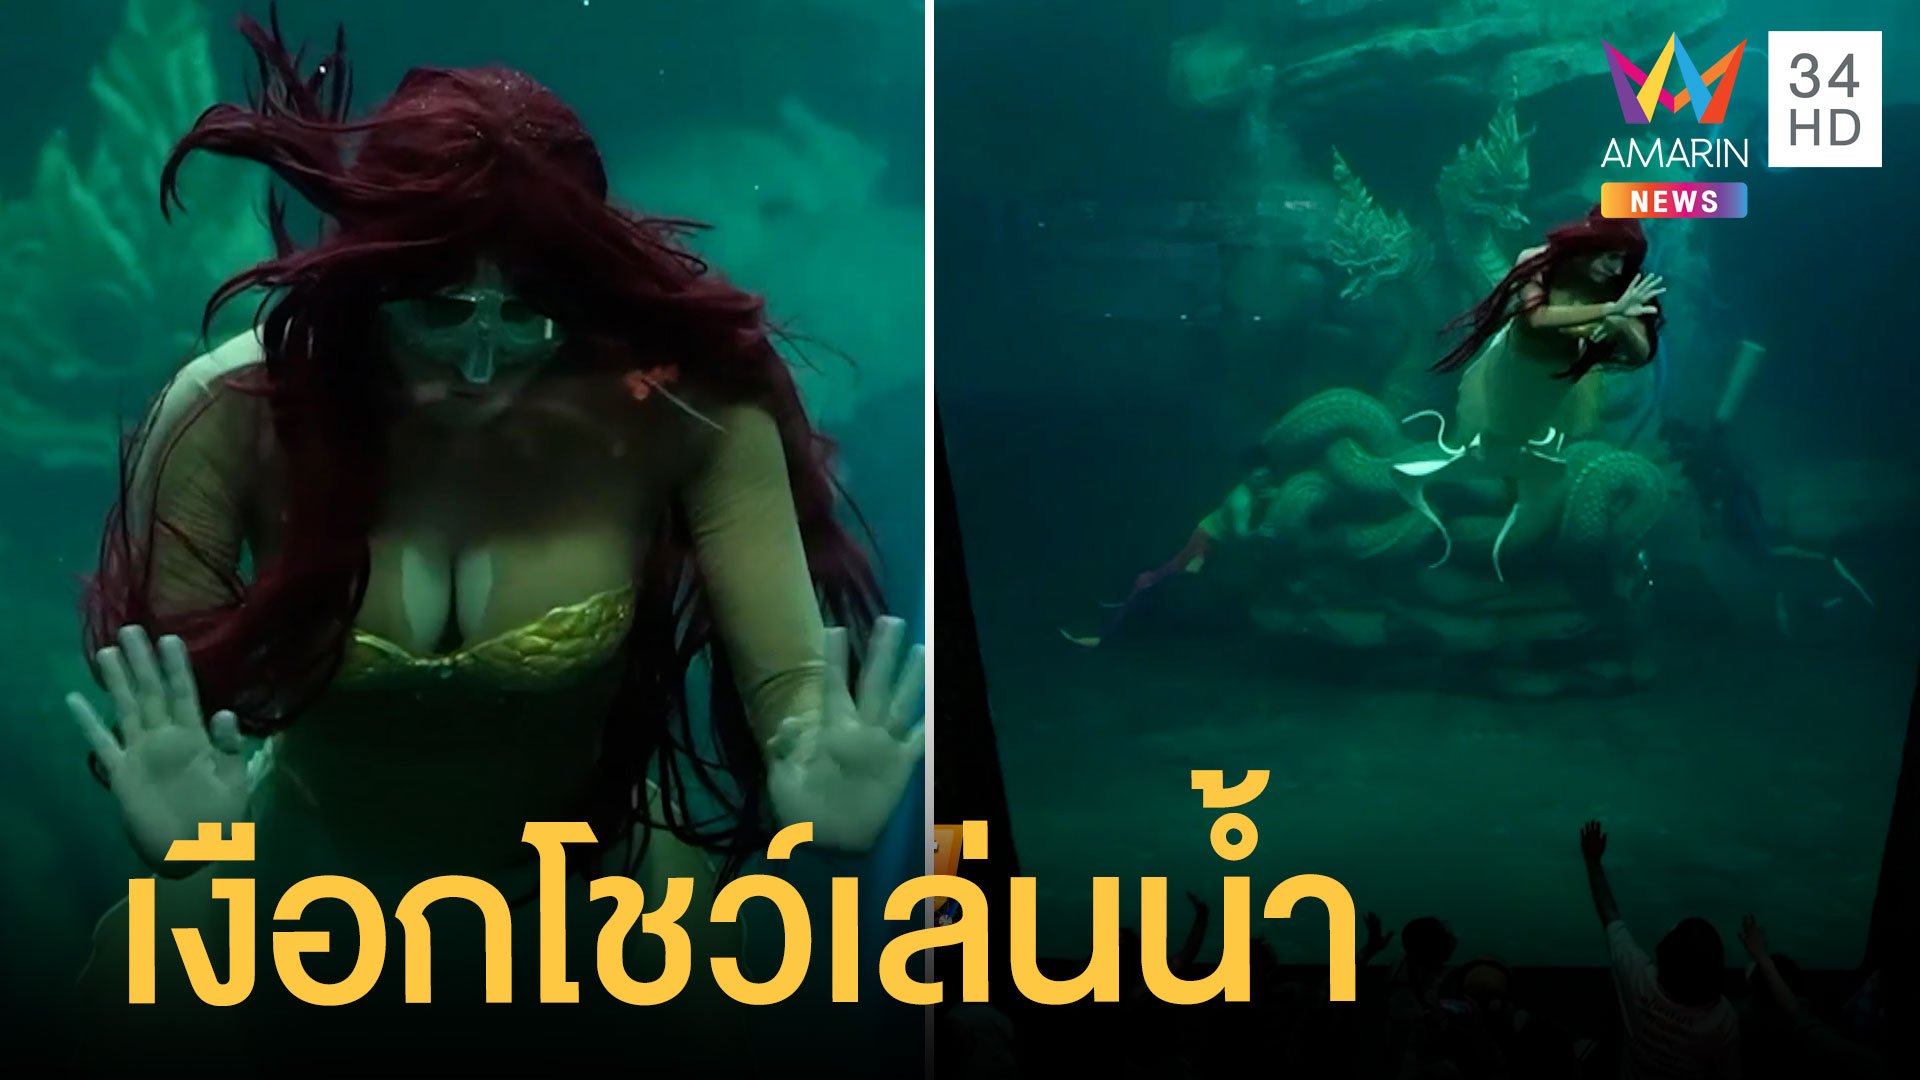 เจ้าหญิงแอเรียล นางเงือกสาวโชว์ลีลาว่ายน้ำพริ้วเอาใจหนูน้อย | ข่าวอรุณอมรินทร์ | 17 ก.ค. 65 | AMARIN TVHD34